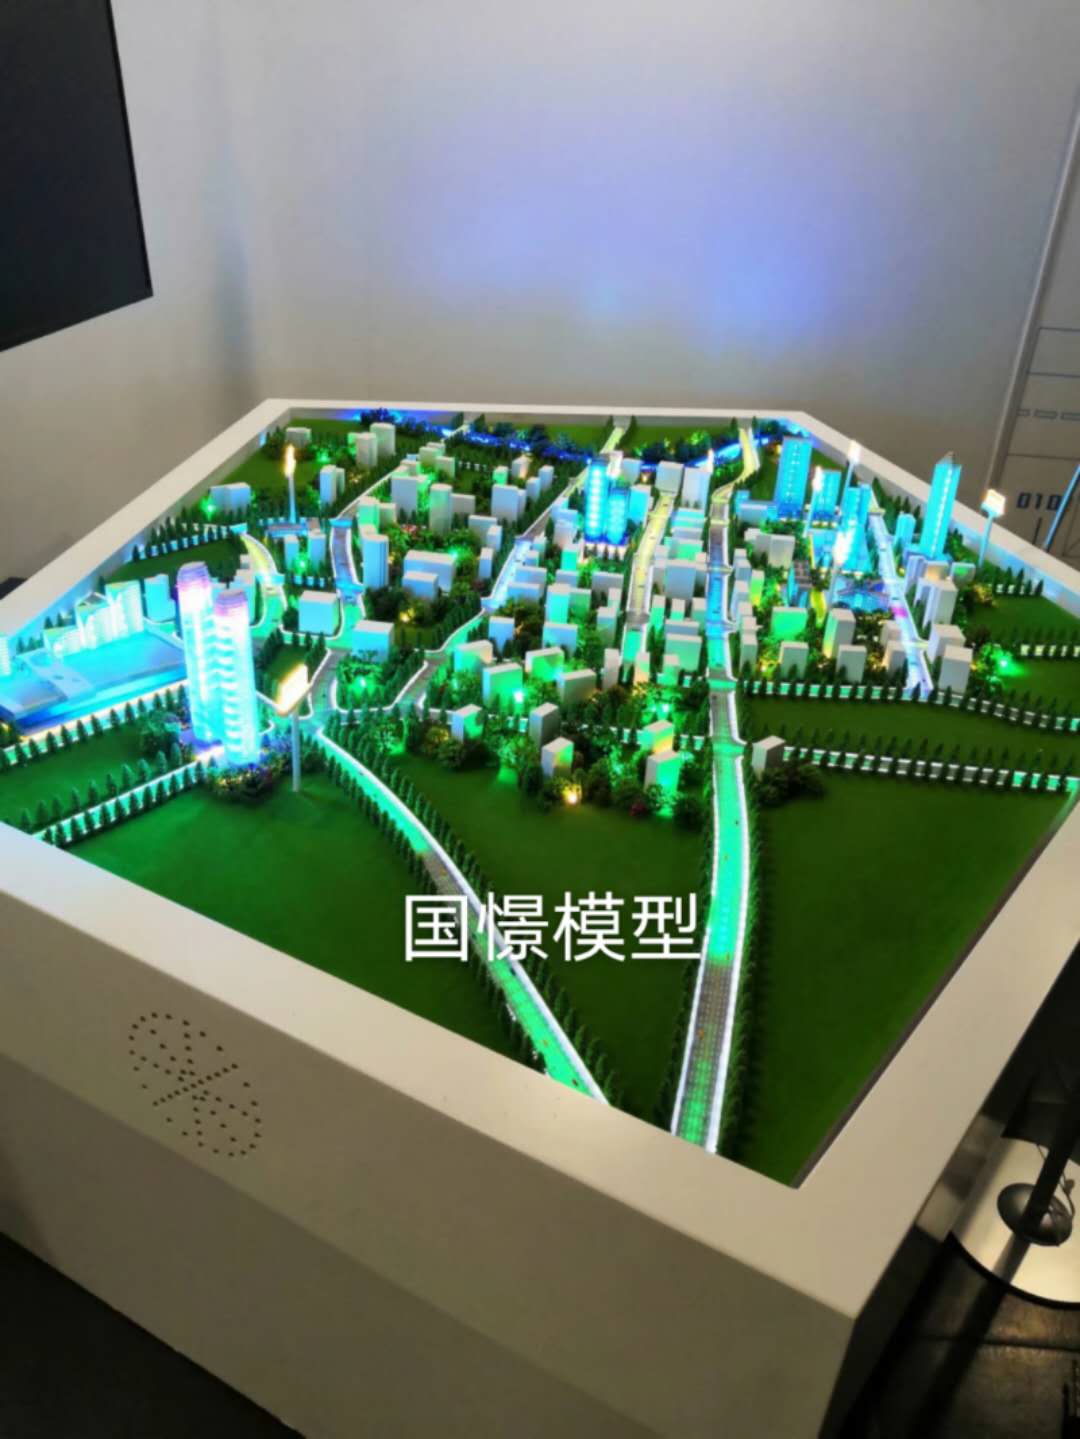 富蕴县建筑模型